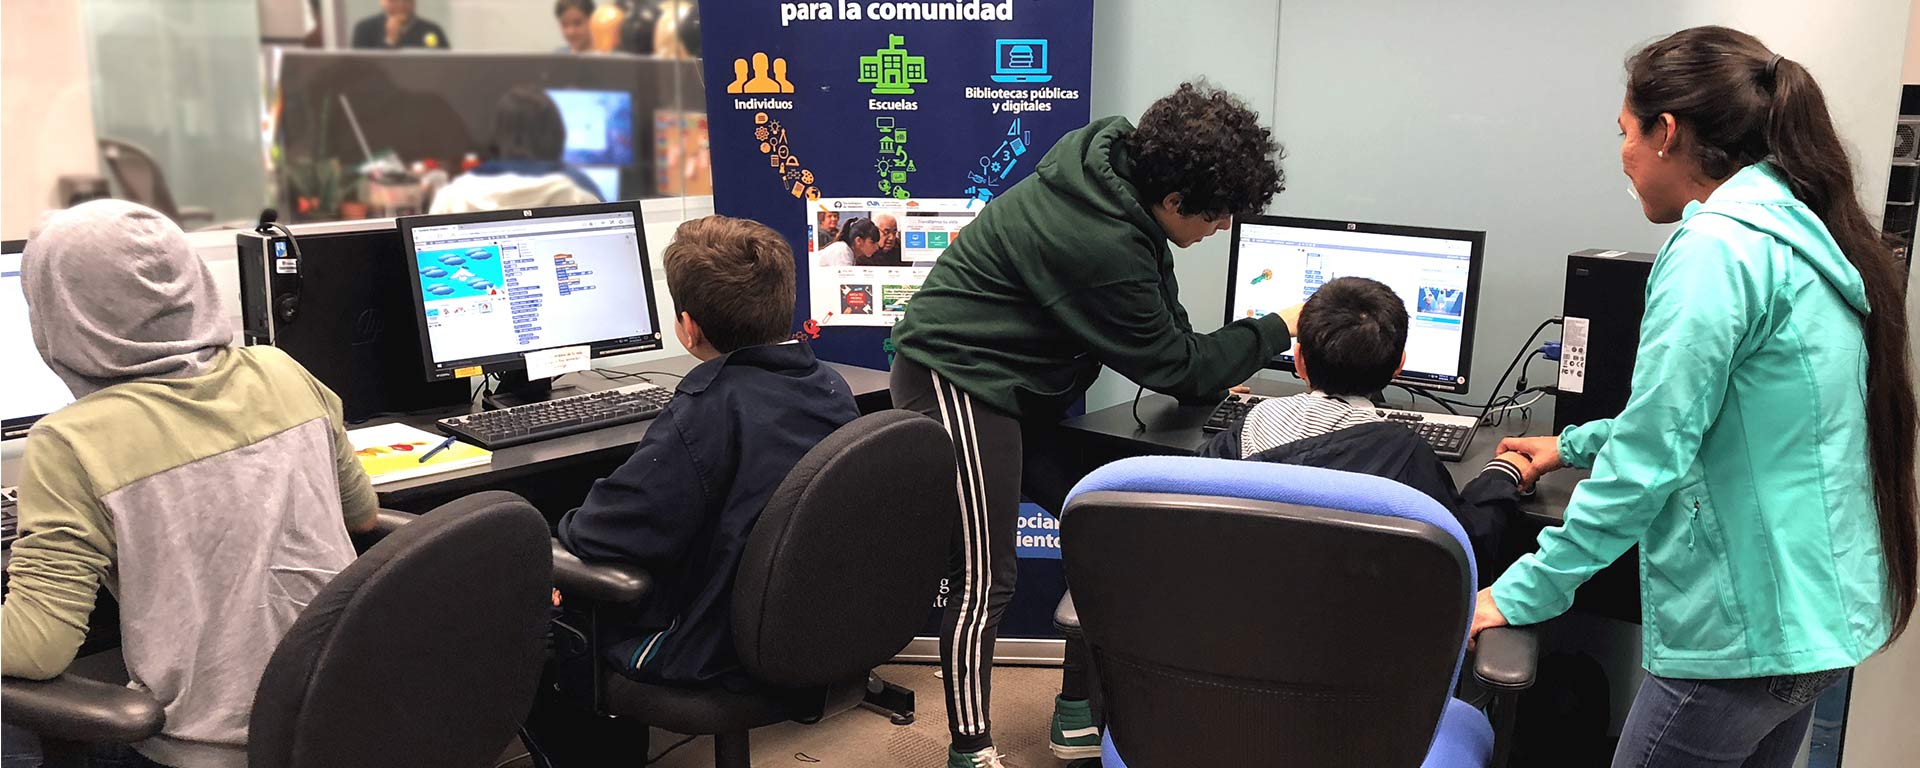 Centro Virtual de Aprendizaje iniciativa de Desarrollo Sostenible del Tec de Monterrey